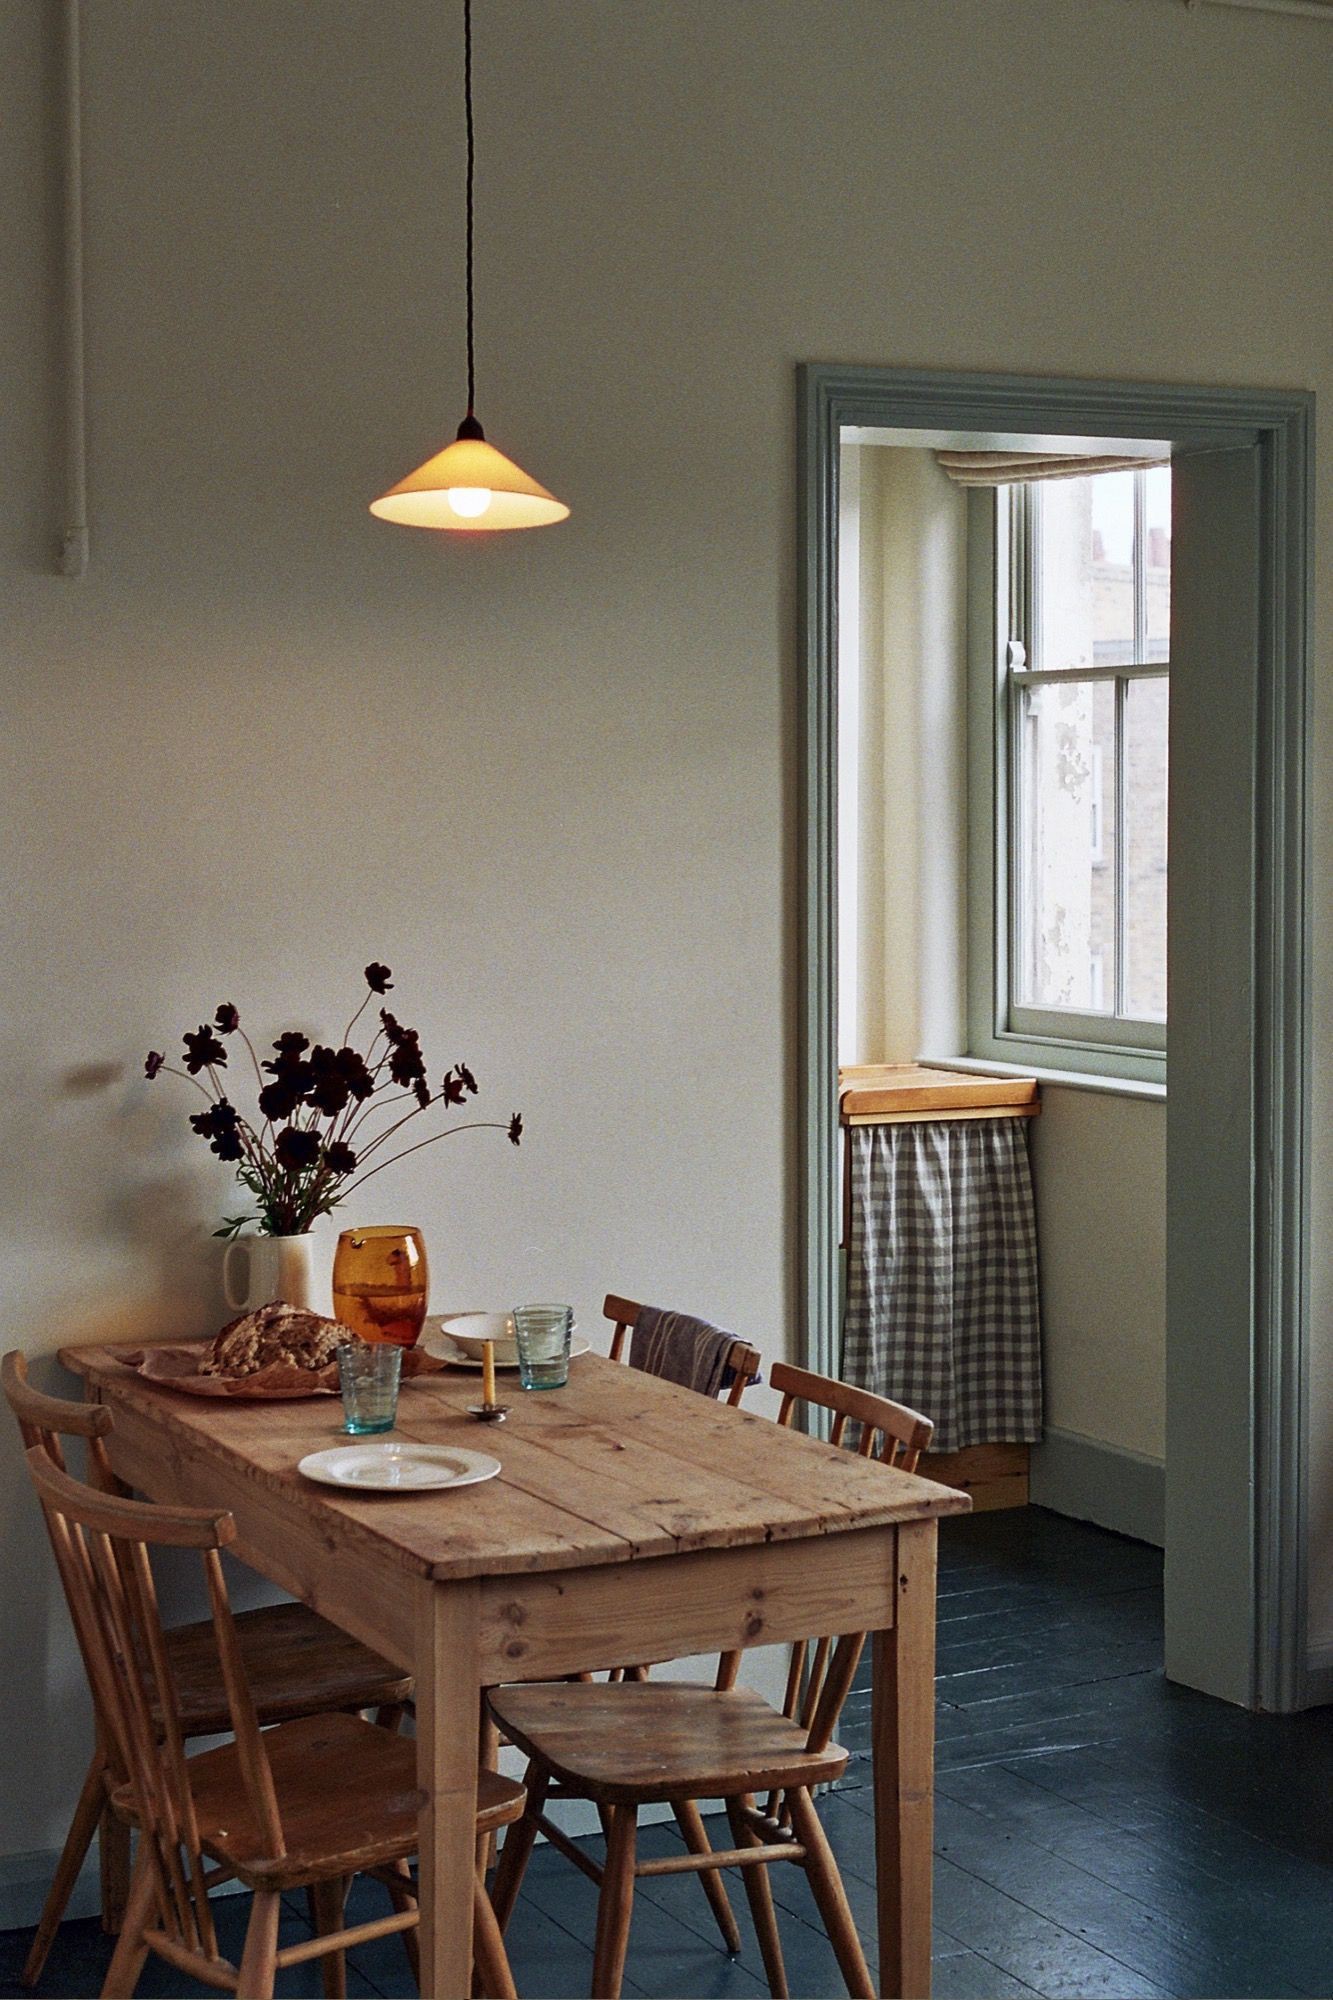  Đặt cạnh ngắn của bàn ăn hình chữ nhật dựa vào tường, điều này phù hợp cho căn hộ không có khu vực ăn uống riêng biệt.